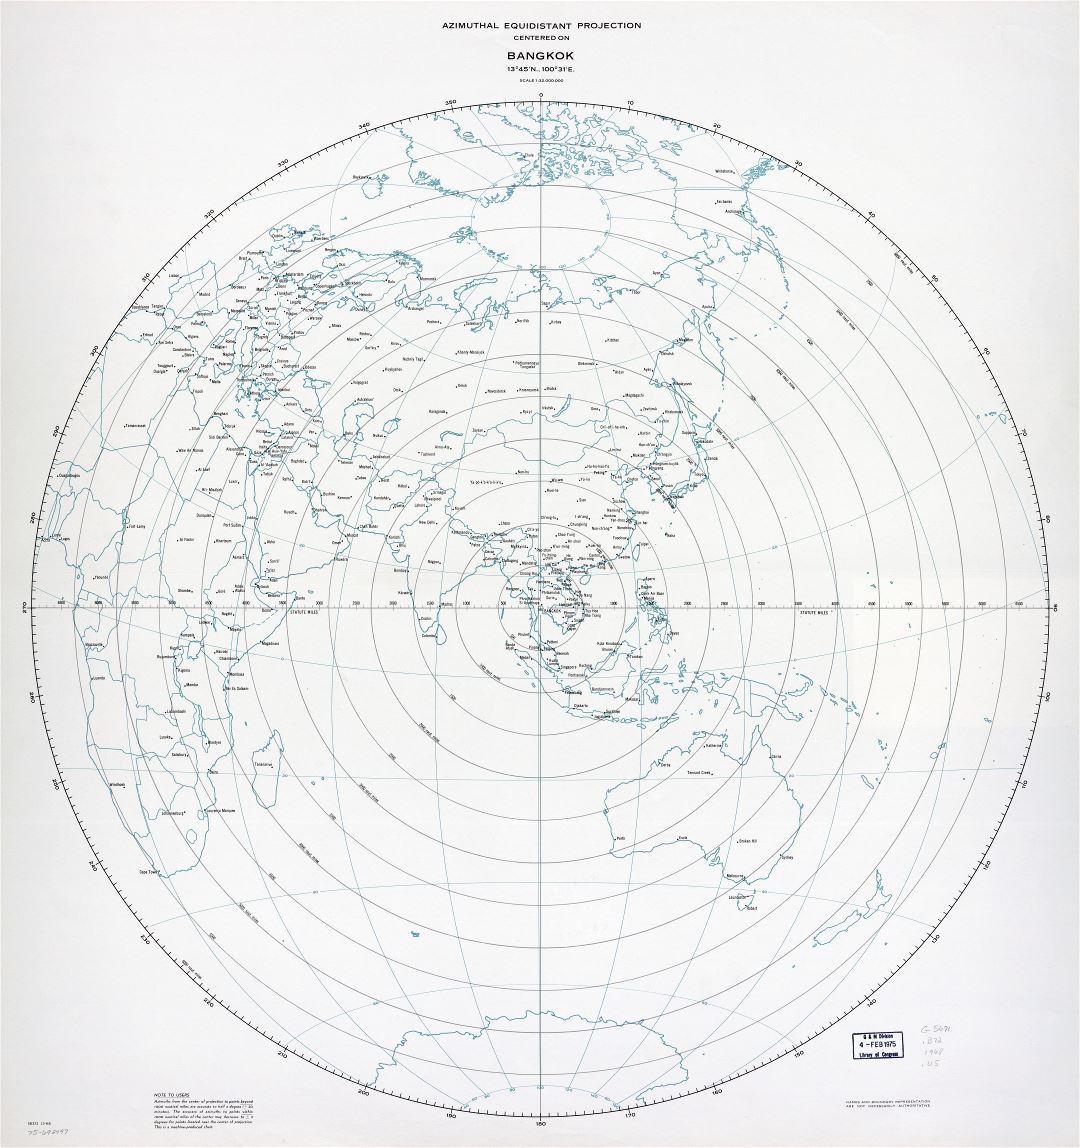 A gran escala mapa de proyección equidistante azimutal centrado en Bangkok - 1968